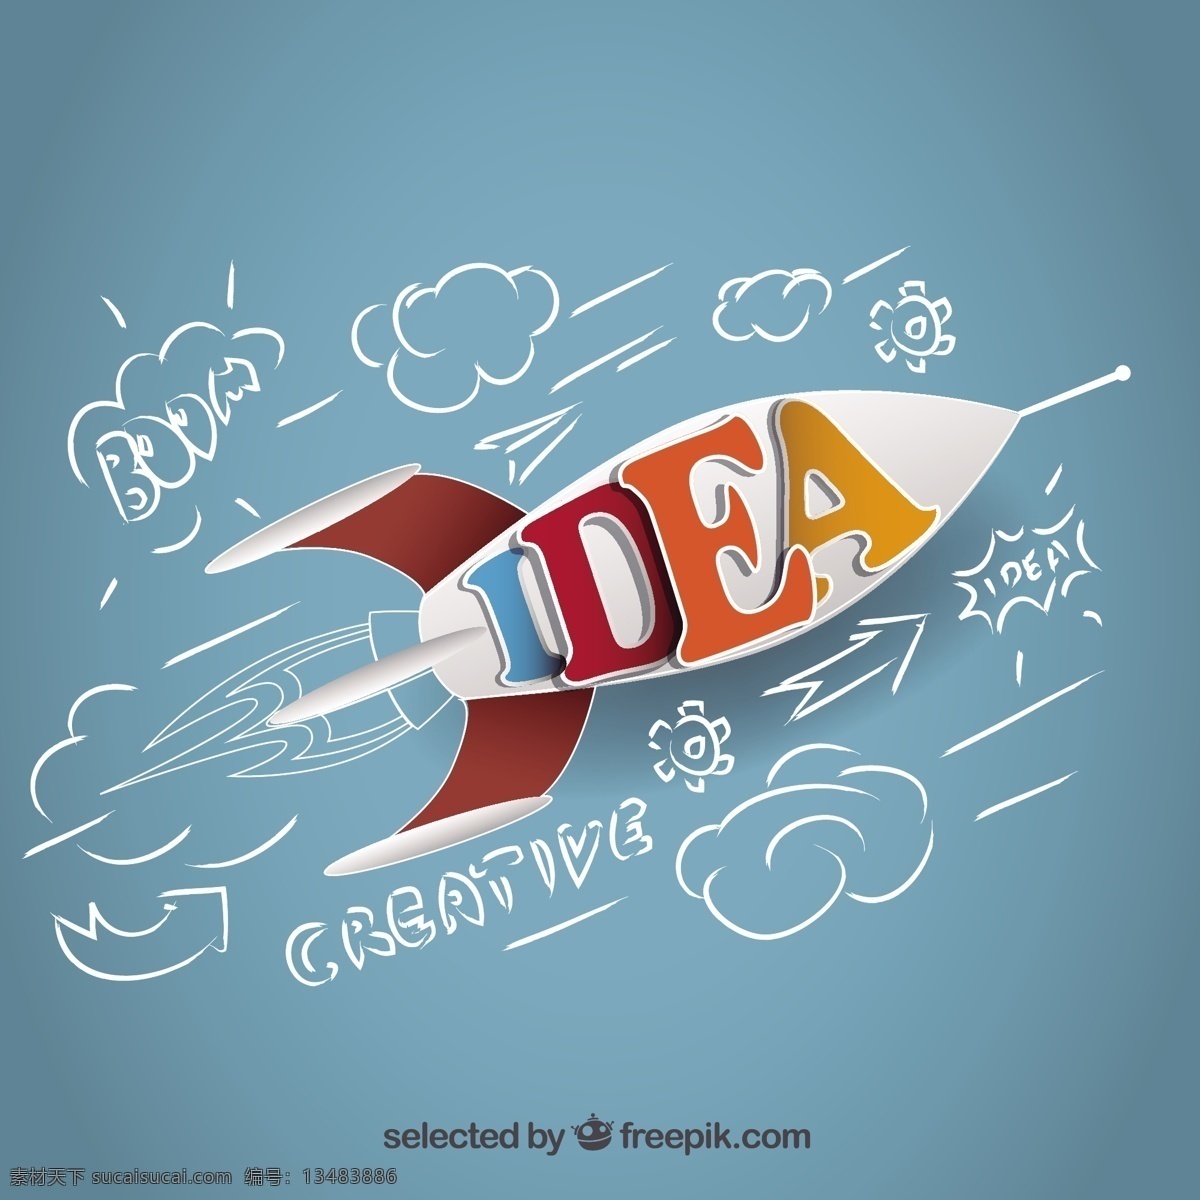 火箭的想法 商务 创意 空间 火箭 成功 创新 飞行 飞船 启动 启动成功